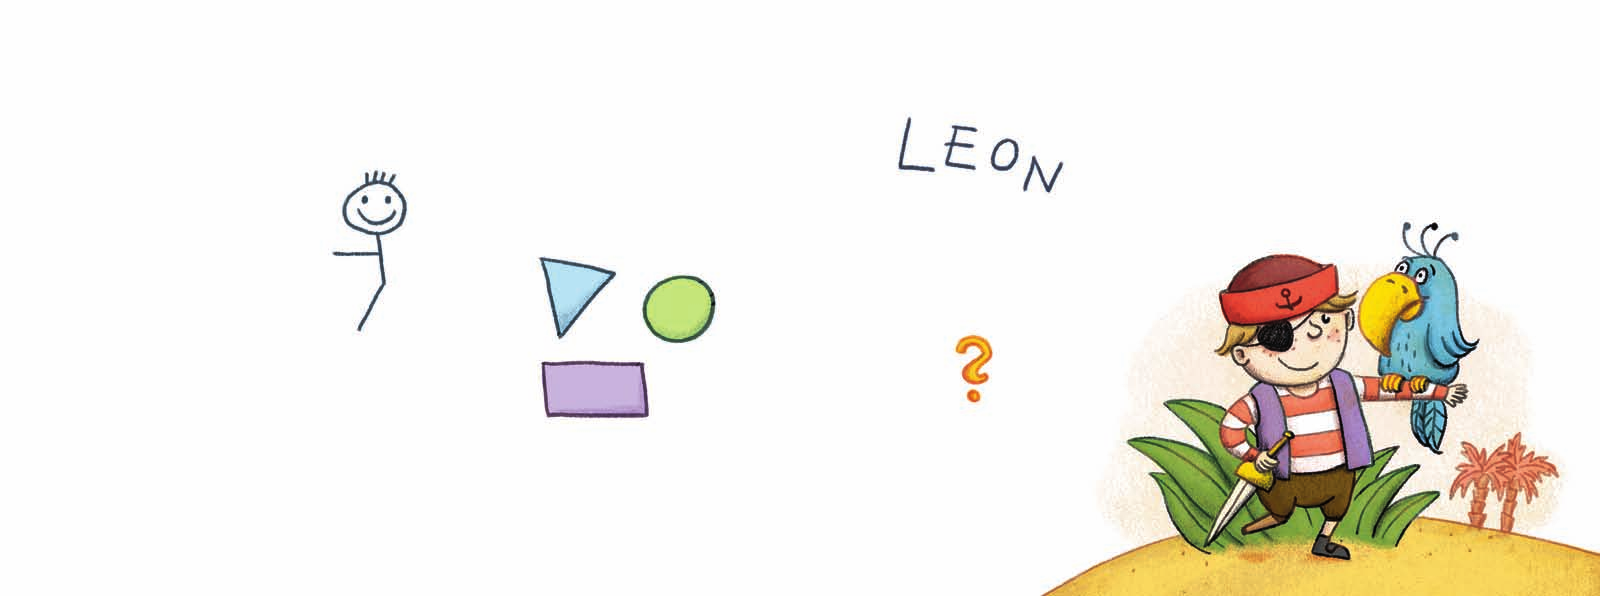 Nachdem der Arzt Leons Fragebogen gelesen hat, wird Leon gemessen und gewogen.